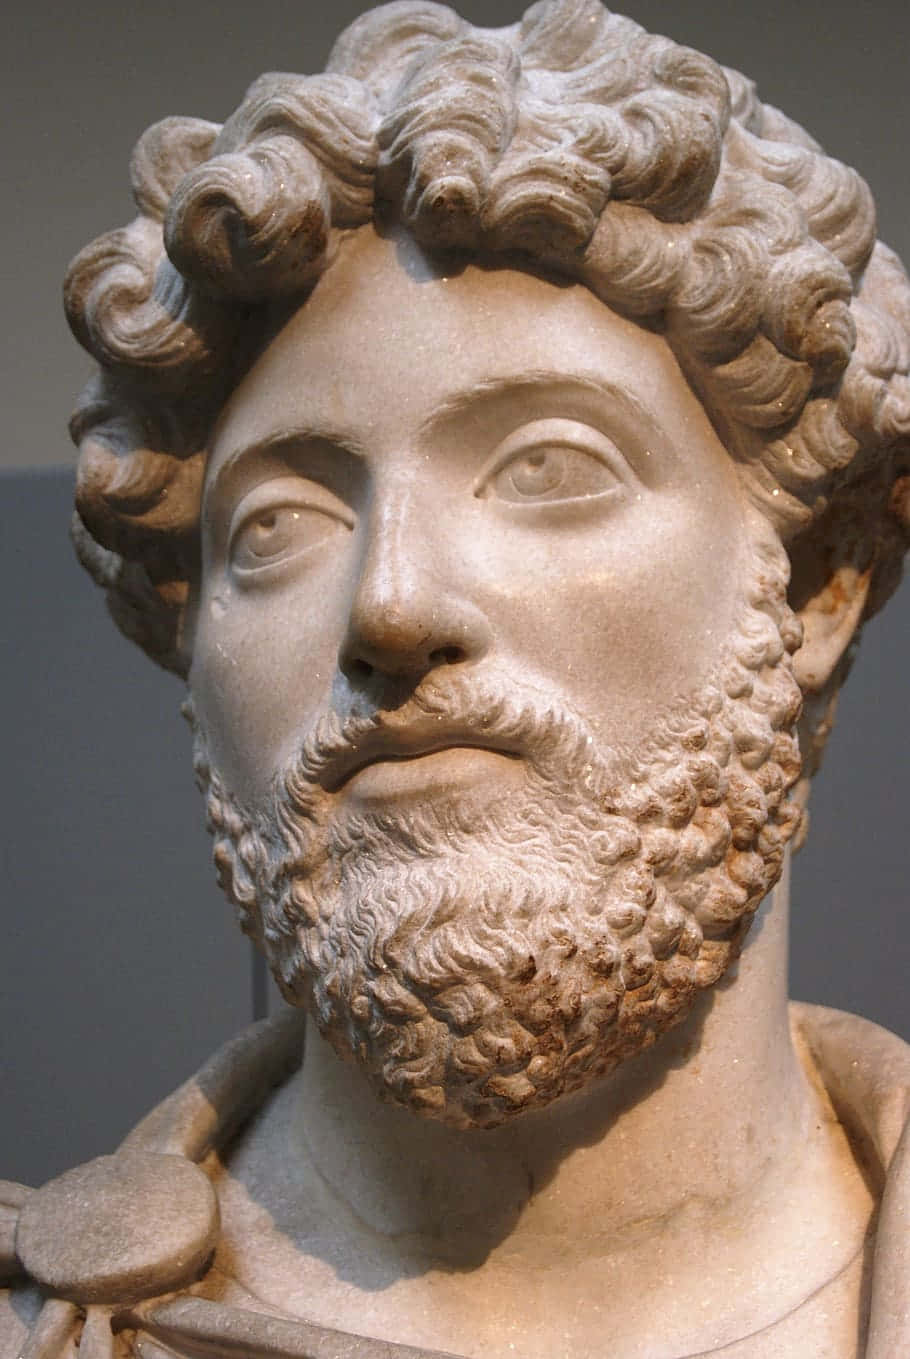 Marcus Aurelius Bust Sculpture Wallpaper